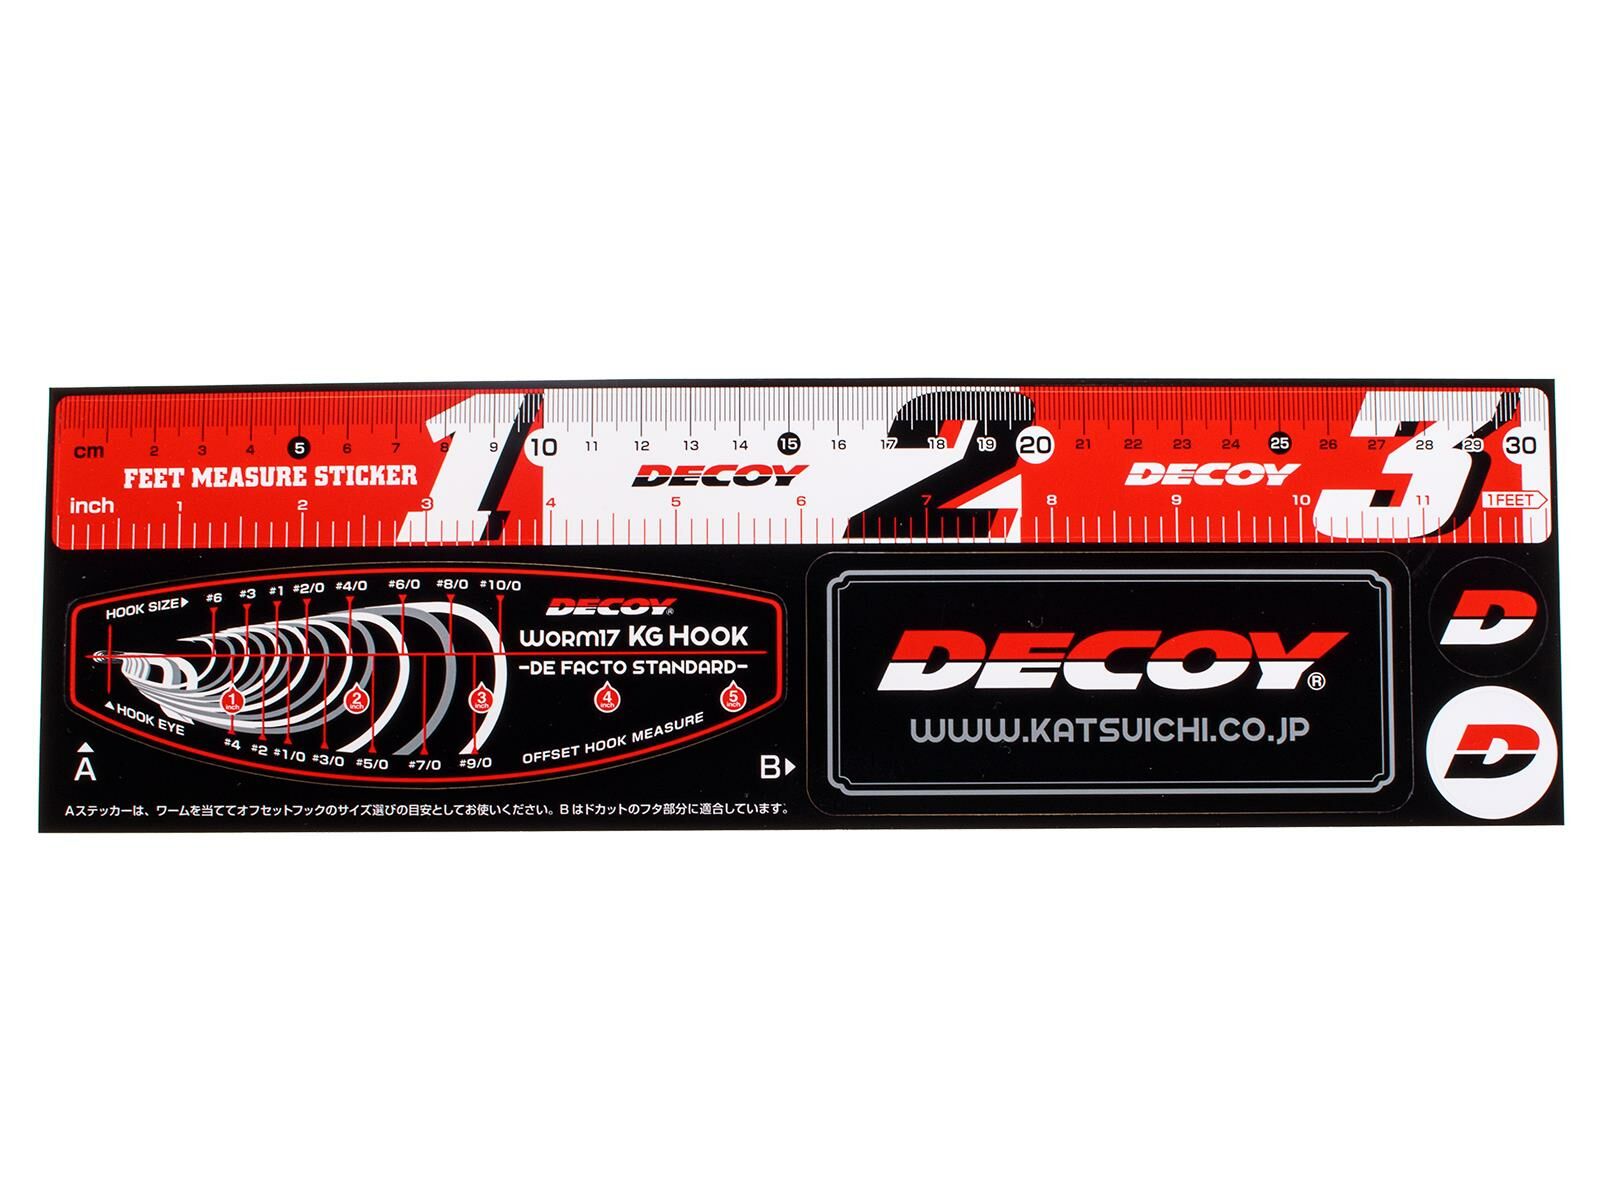 DECOY DA-7 Measure Sticker 30 (310 x 92 mm) Rot